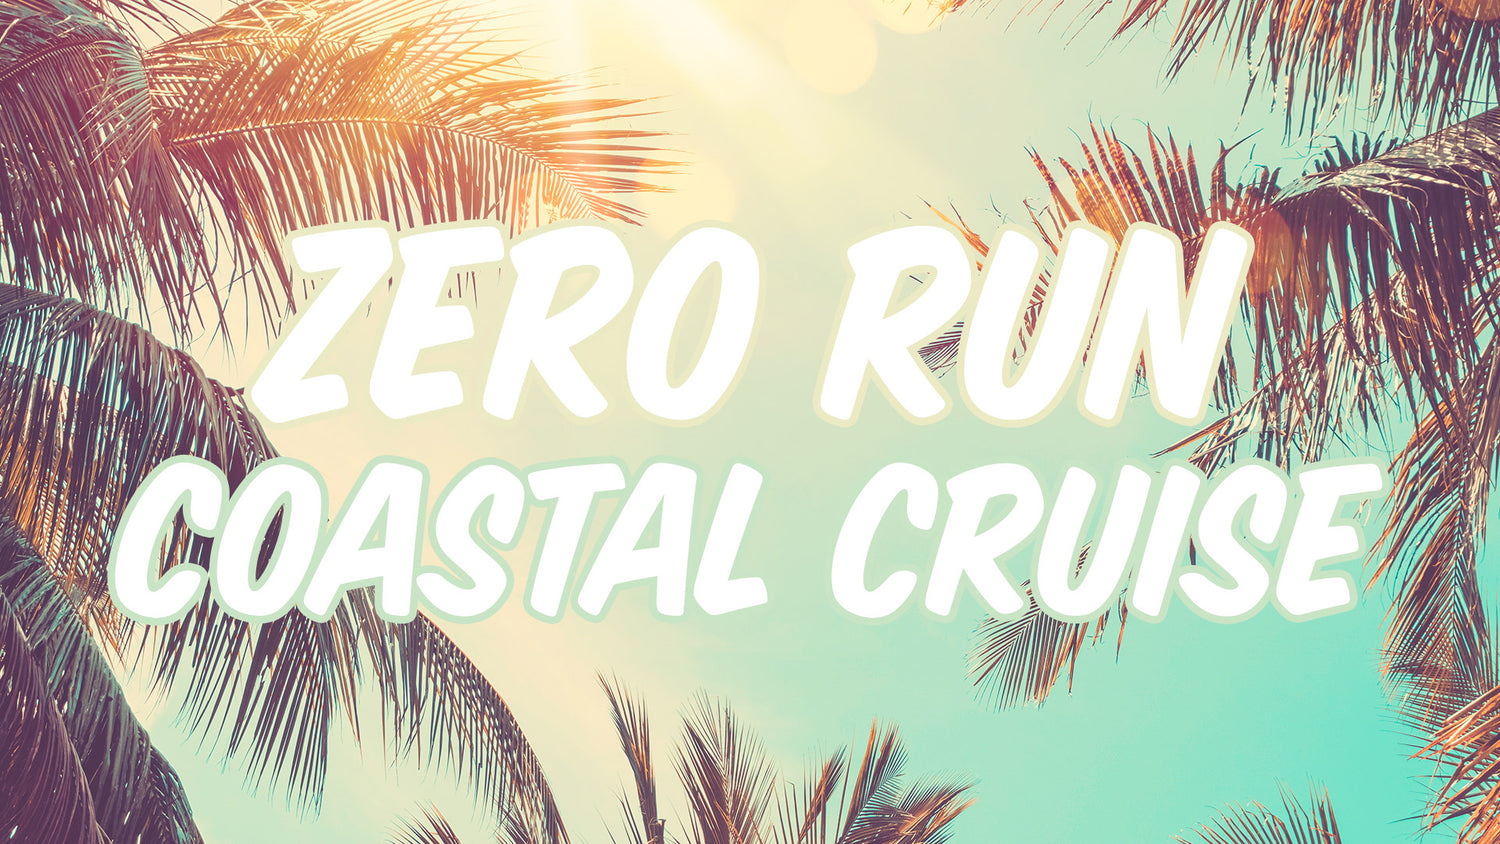 zero run coastal cruise